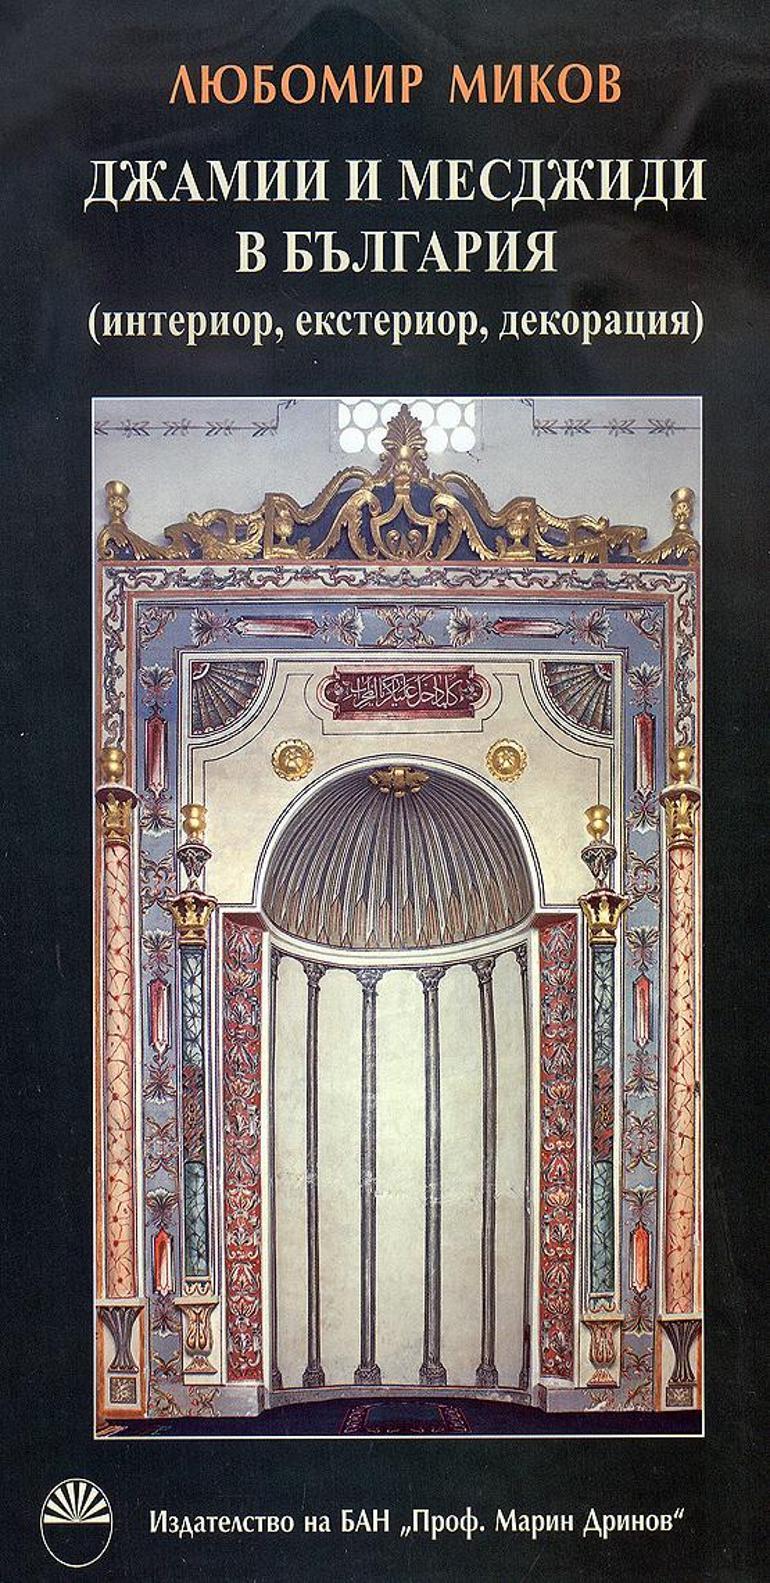 Osmanlı camilerinin bilinmeyen yönleri